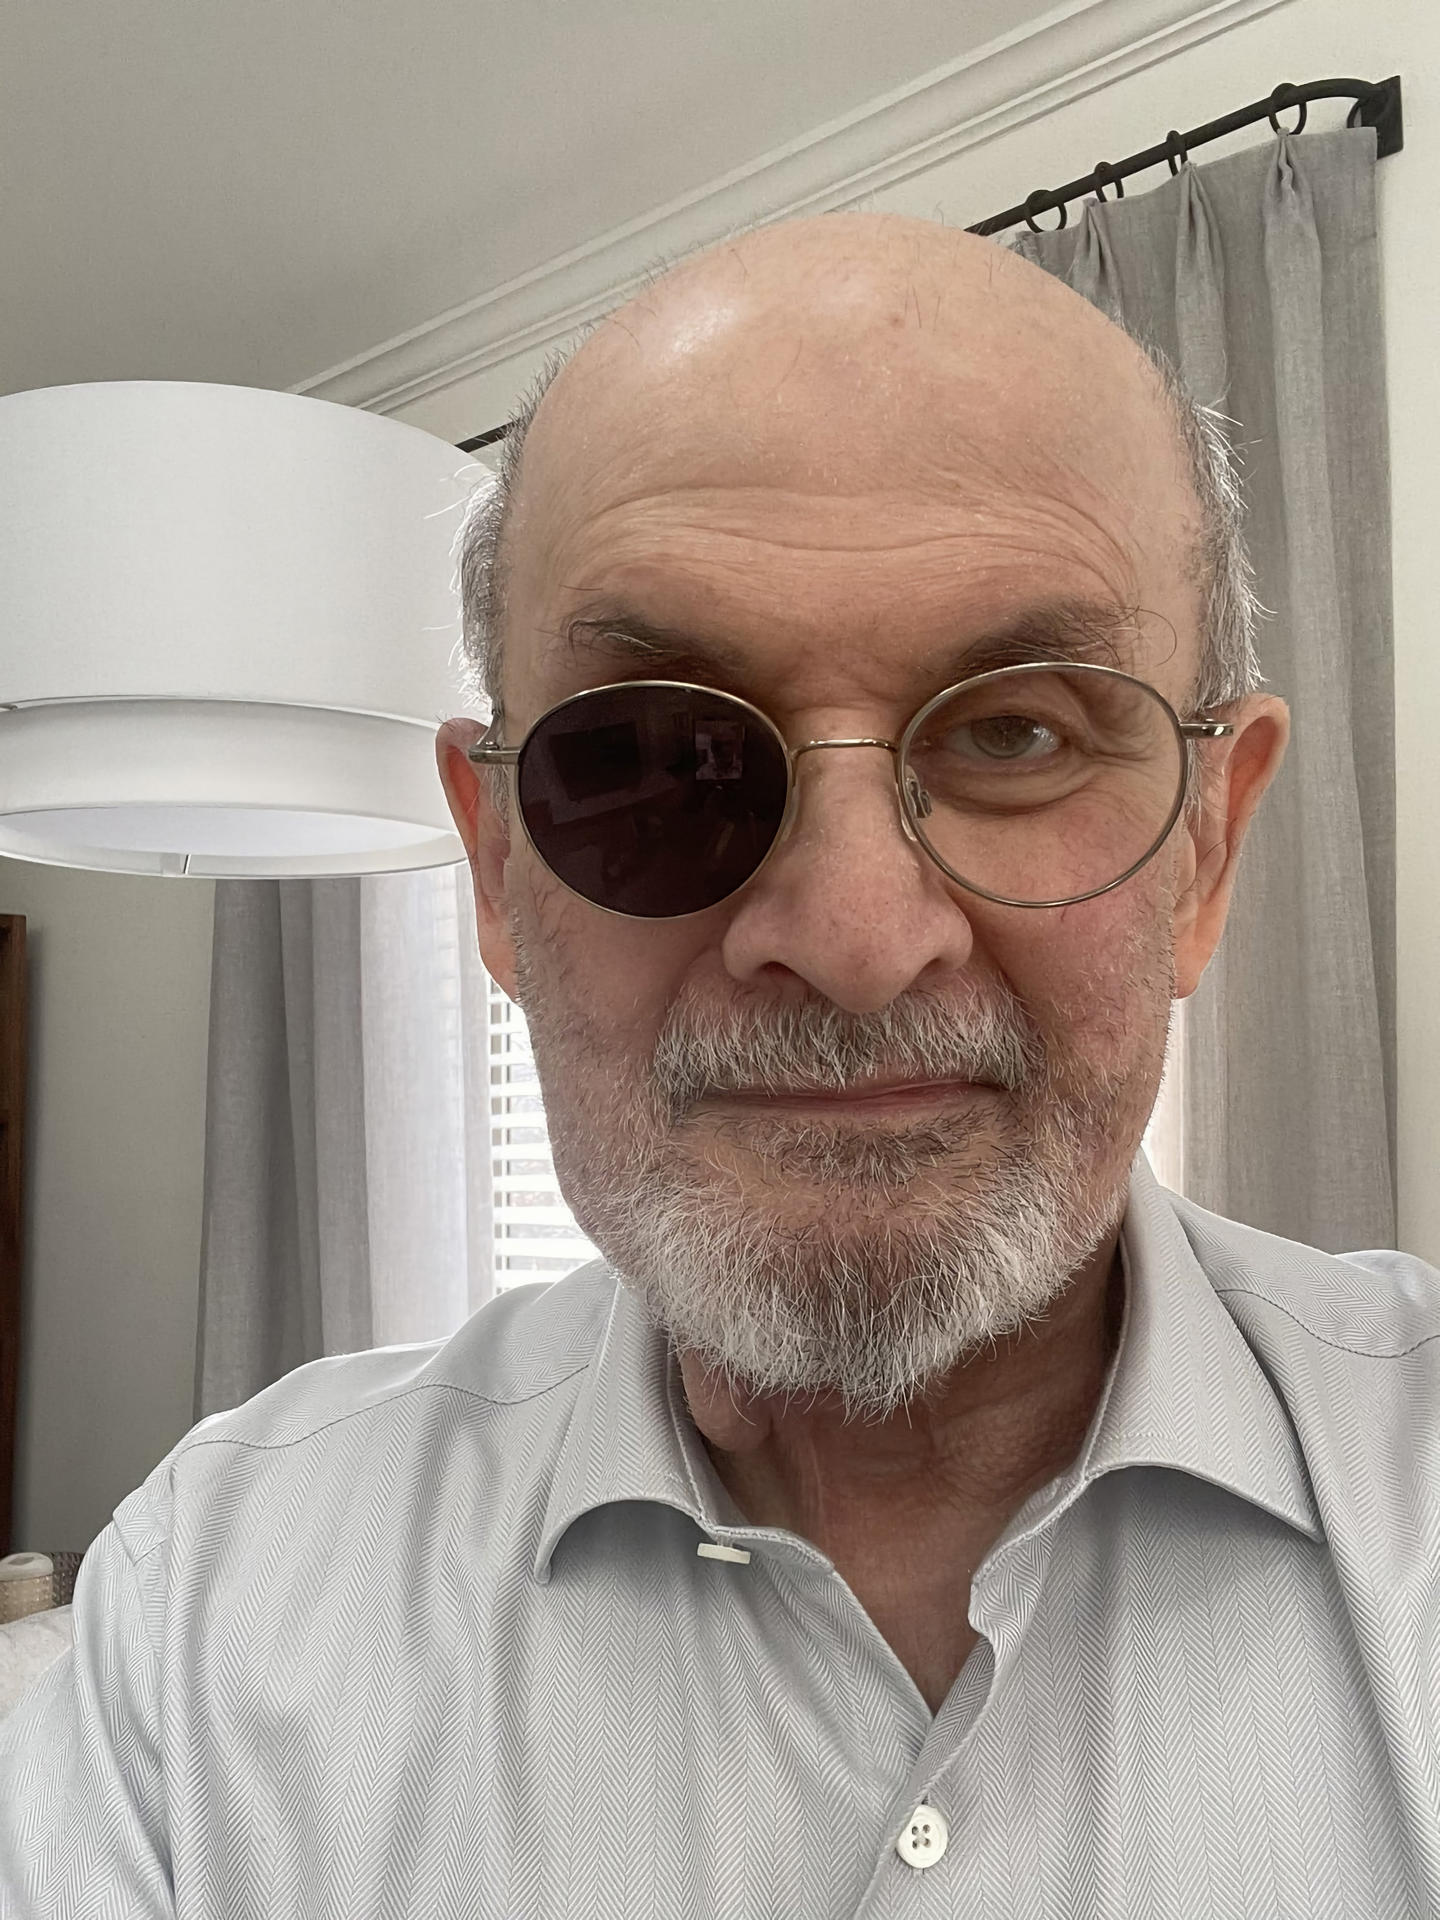 Fotografía publicada por el escritor Salman Rushdie en su cuenta de Twitter donde indica que es así como luce actualmente, al contrario de la foto publicada por el New Yorker la cual calificó de 